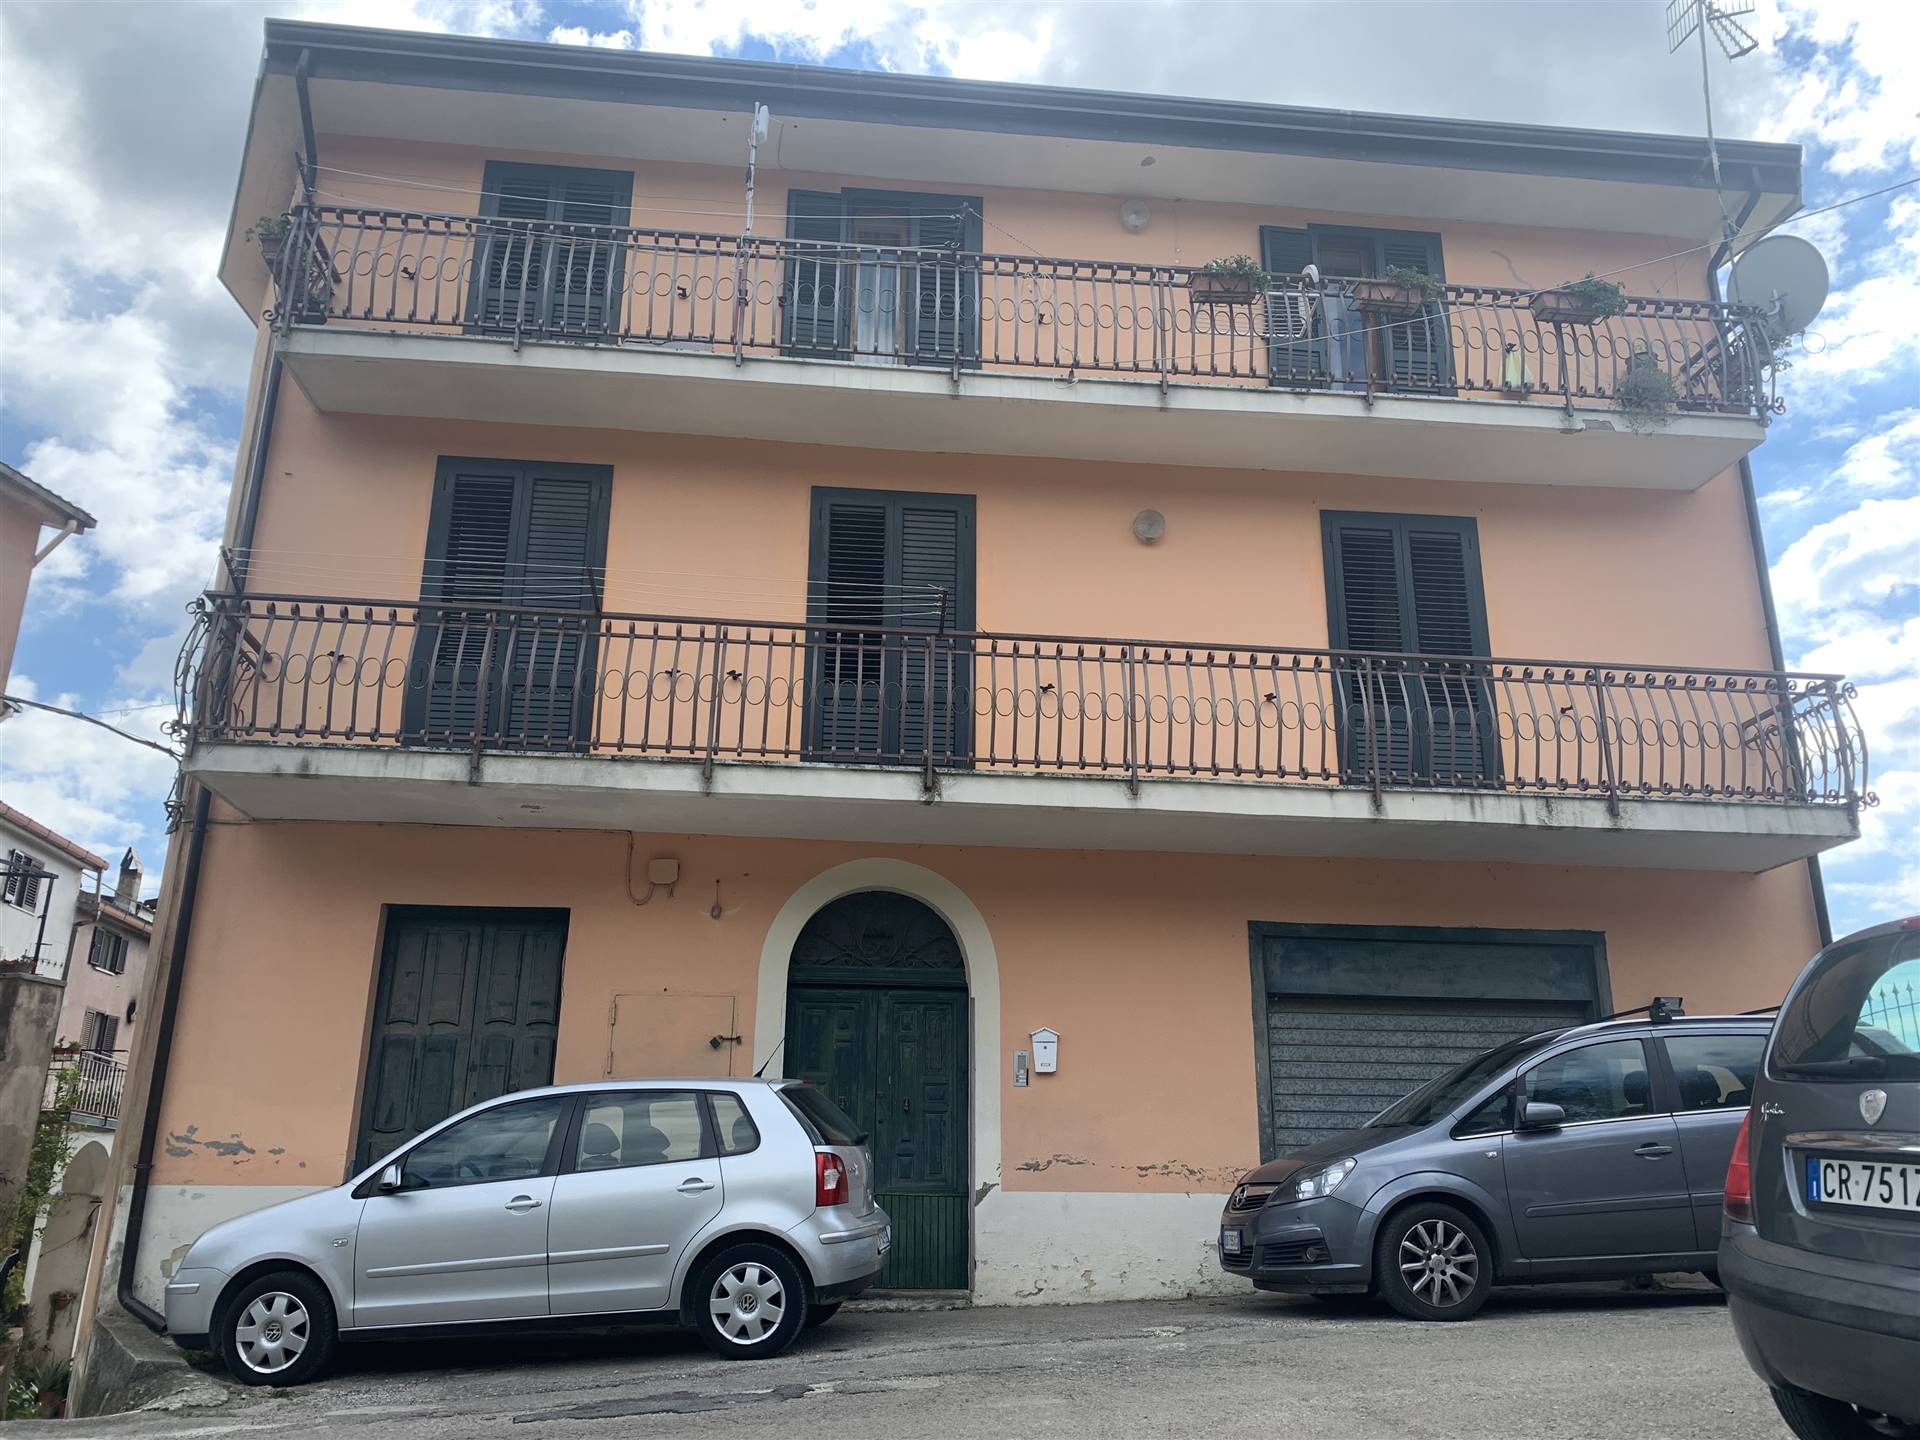 Appartamento in vendita a Sessa Aurunca, 4 locali, zona Località: TUORO, prezzo € 80.000 | PortaleAgenzieImmobiliari.it